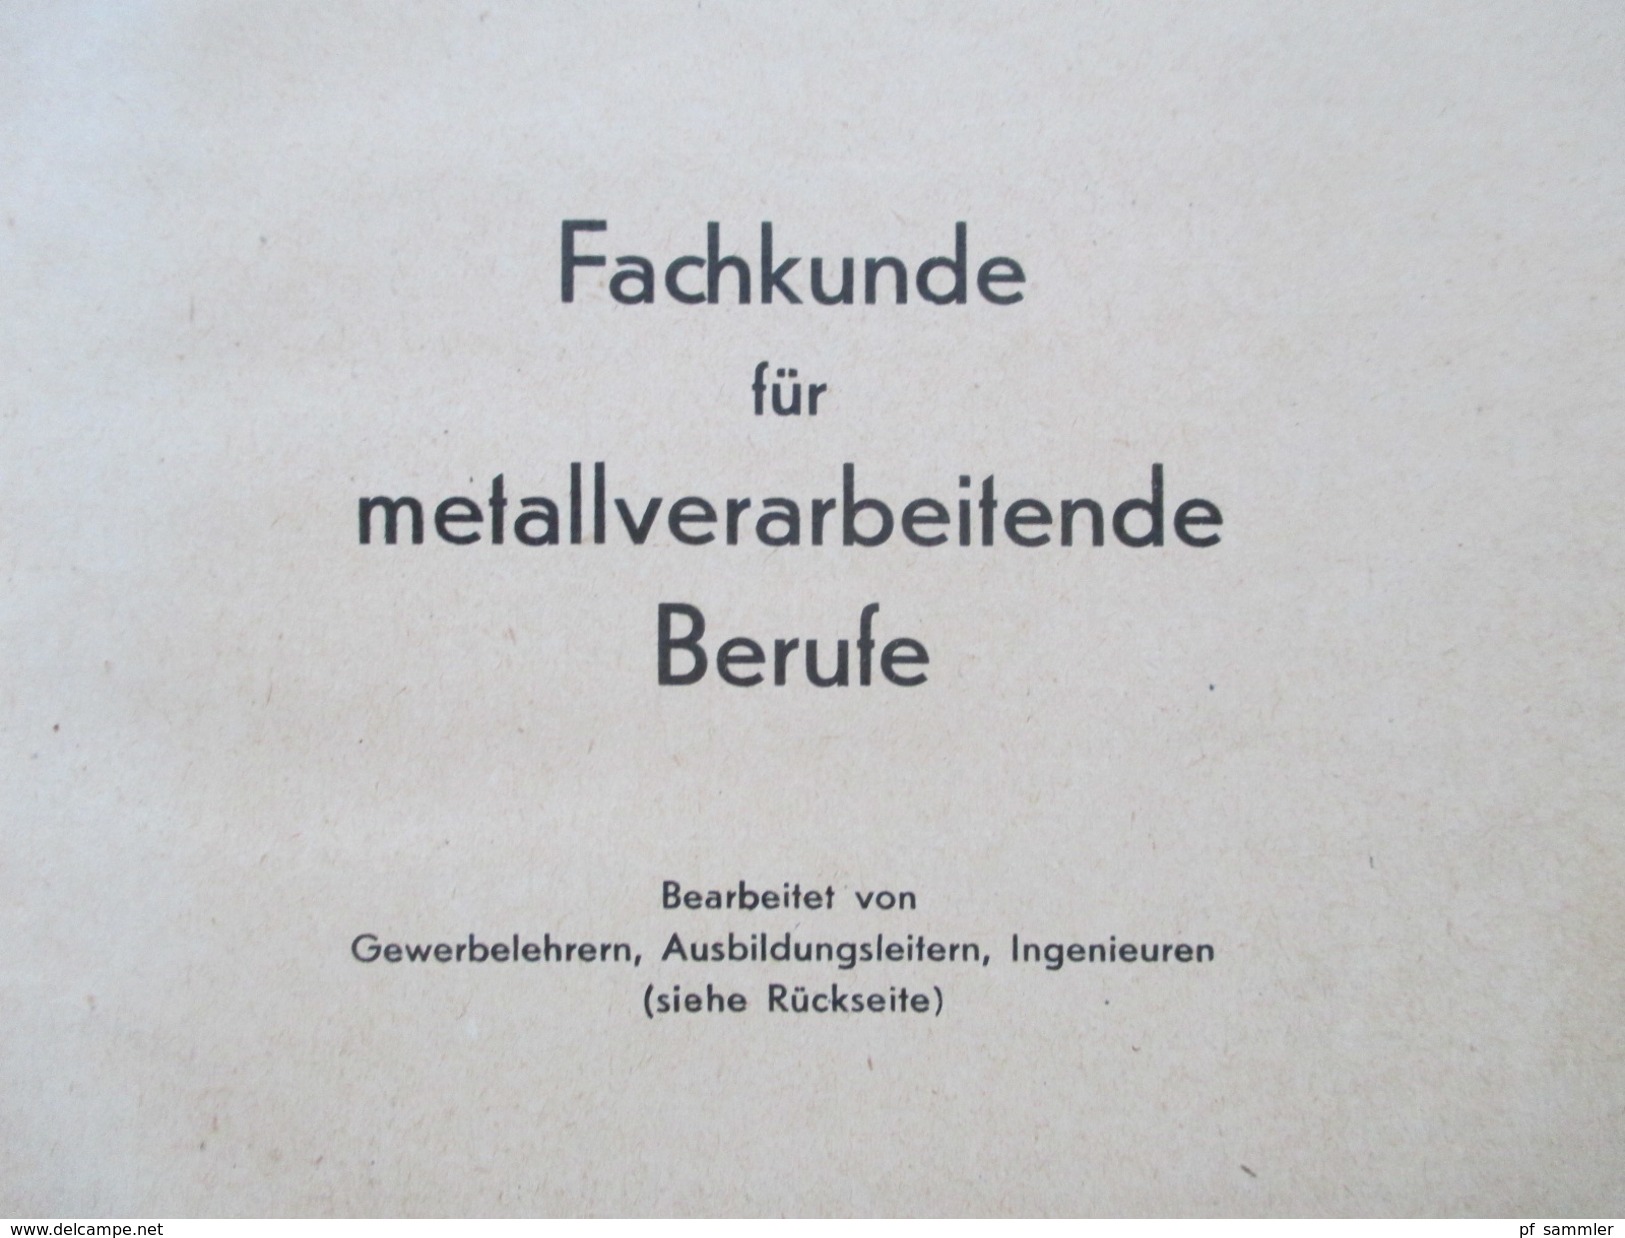 Schulbuch 1949 Fachkunde Für Metallverarbeitende Berufe. Europa Lehrmittel. Mit Vielen Abbildungen! Toll!! - School Books